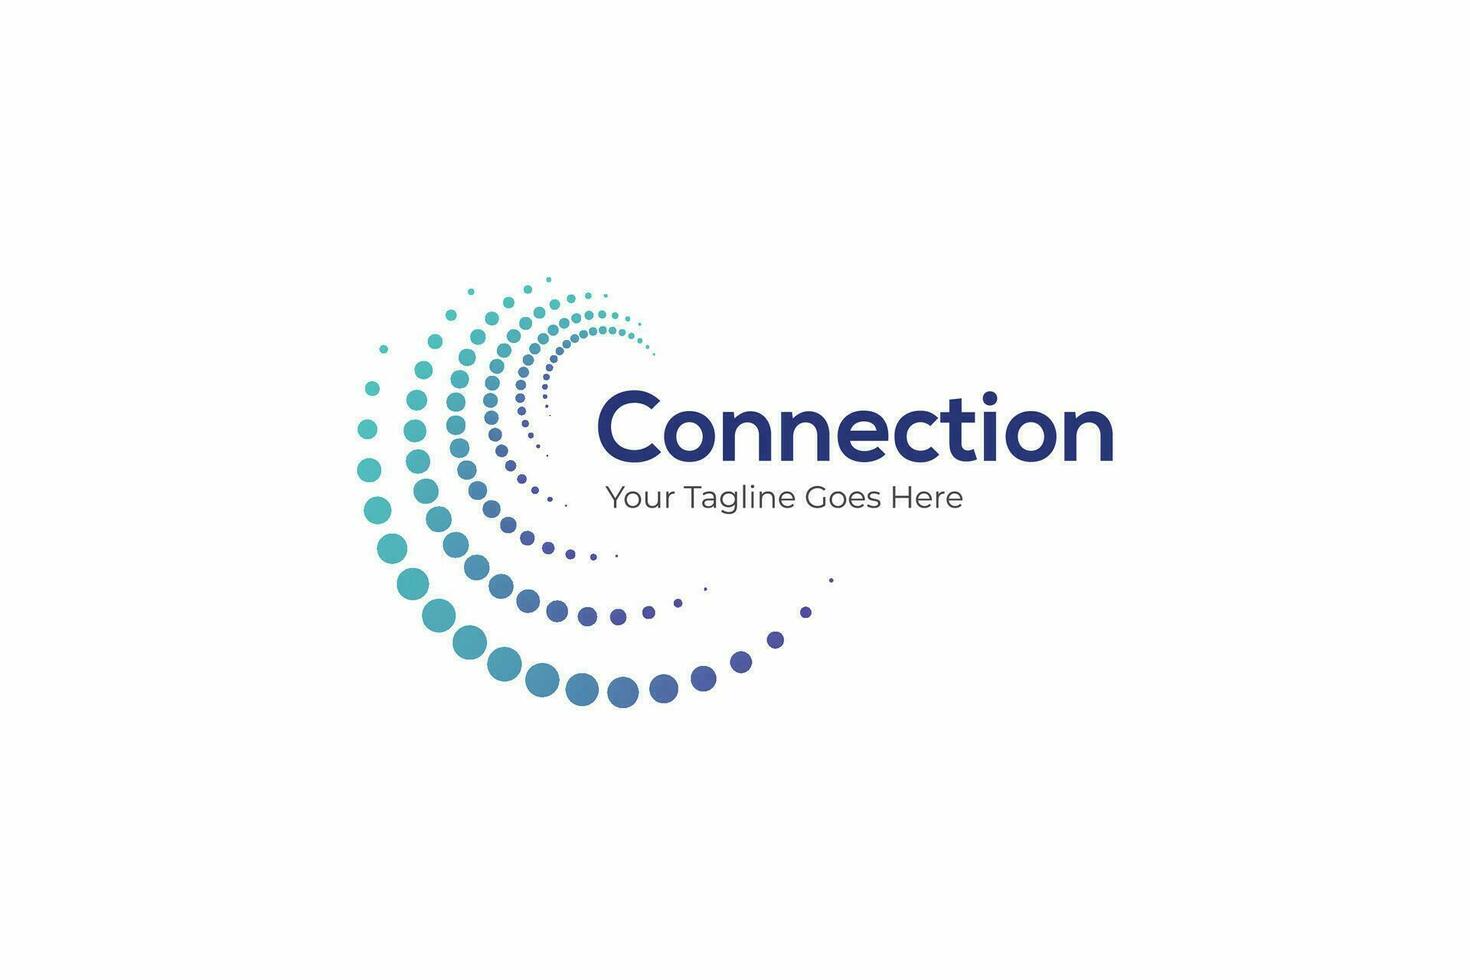 lien logo moderne affaires global La technologie réseau l'Internet entreprise site Internet avec abstrait forme tournoiement demi-teinte concept vecteur